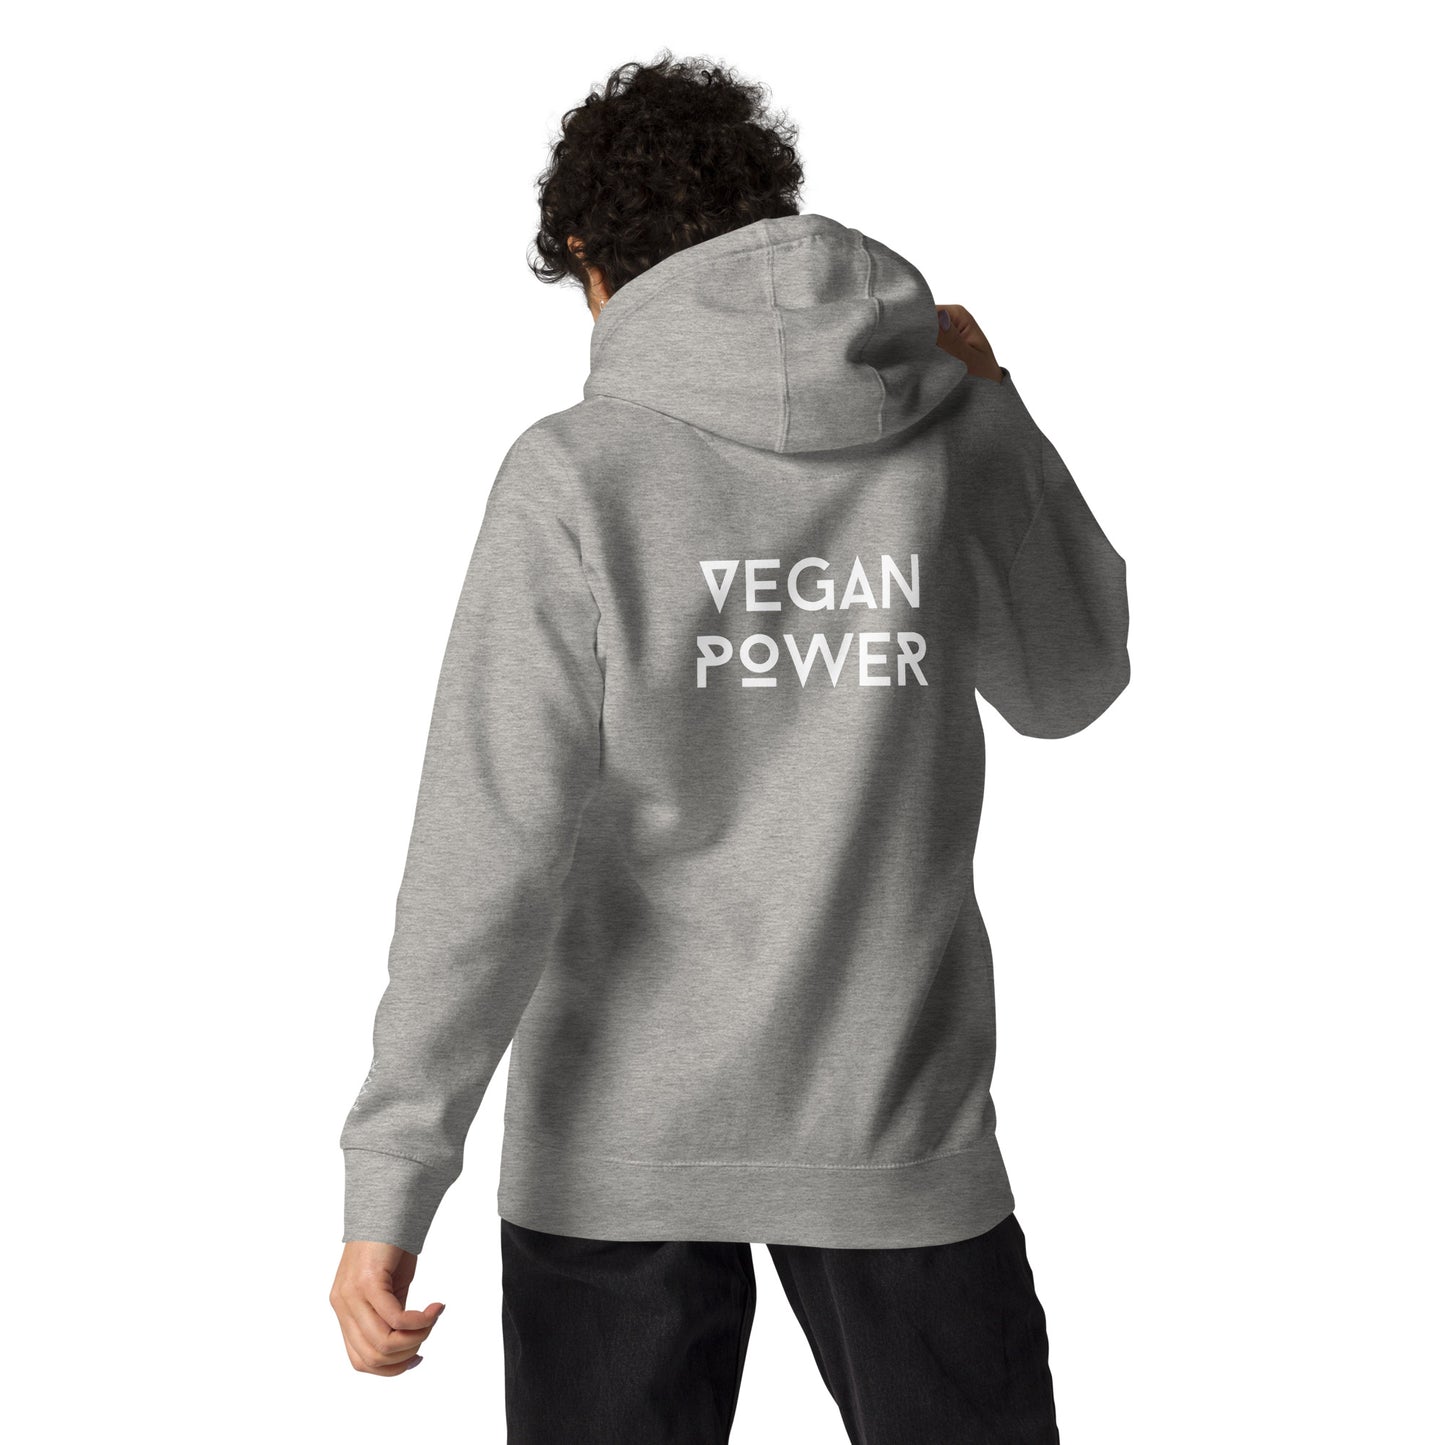 Vegan Power - Unisex Premium Hoodie